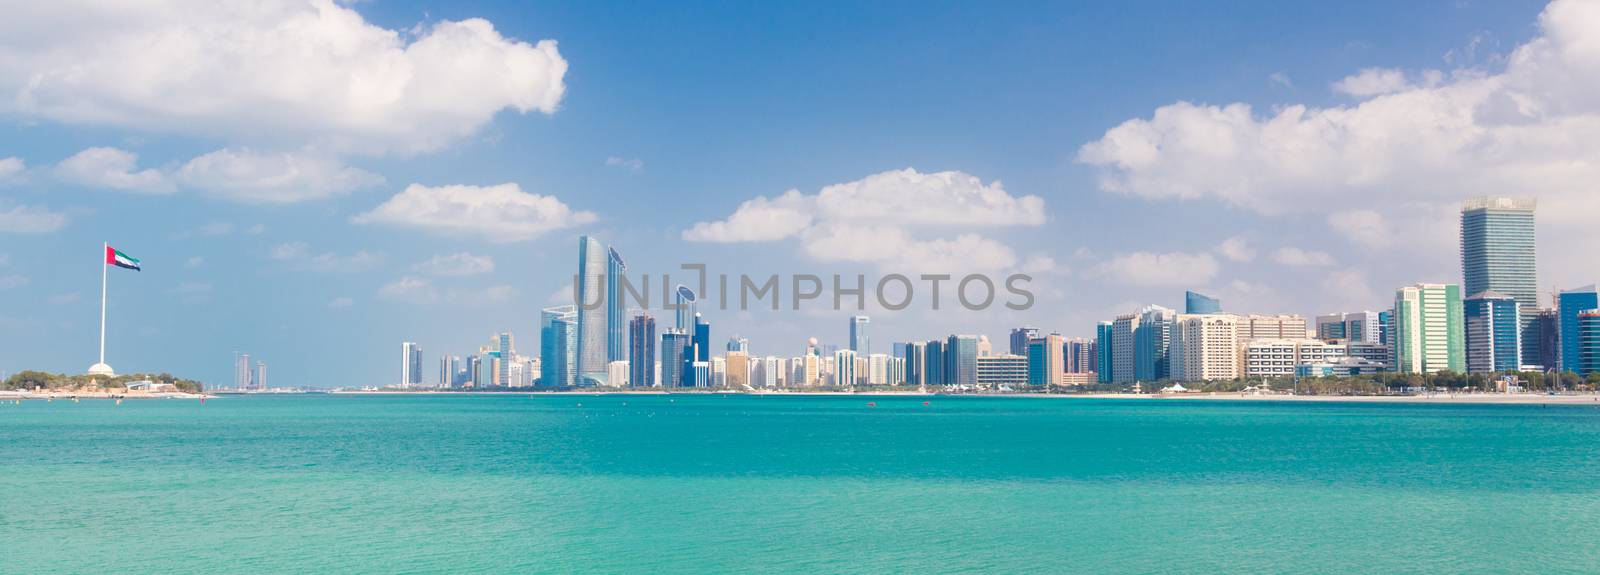 Abu Dhabi waterfront, United Arab Emirates by kasto